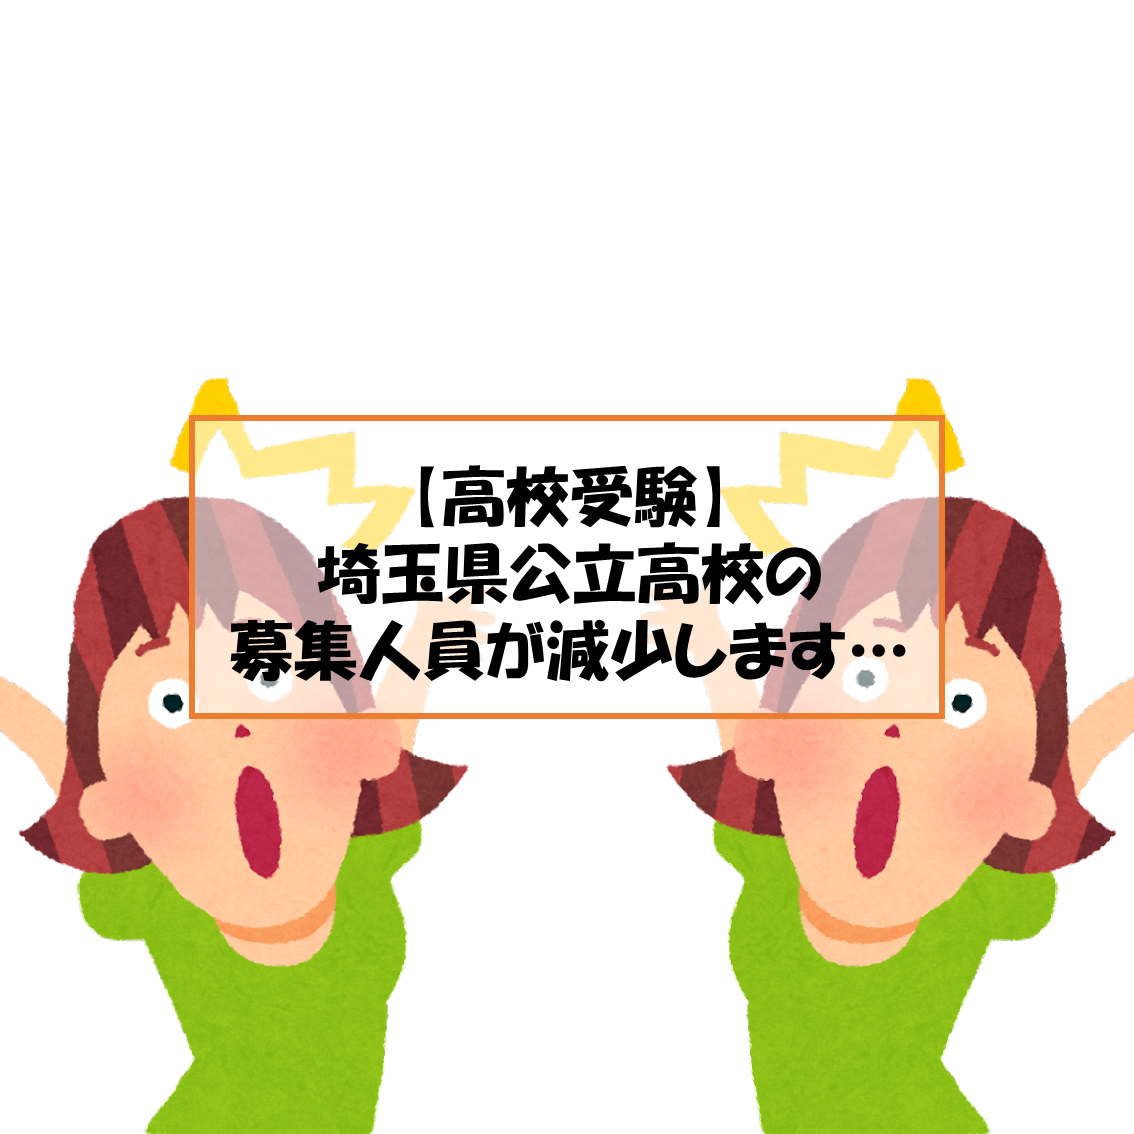 【高校受験】埼玉県公立高校(全日制)の募集人員が減少します…